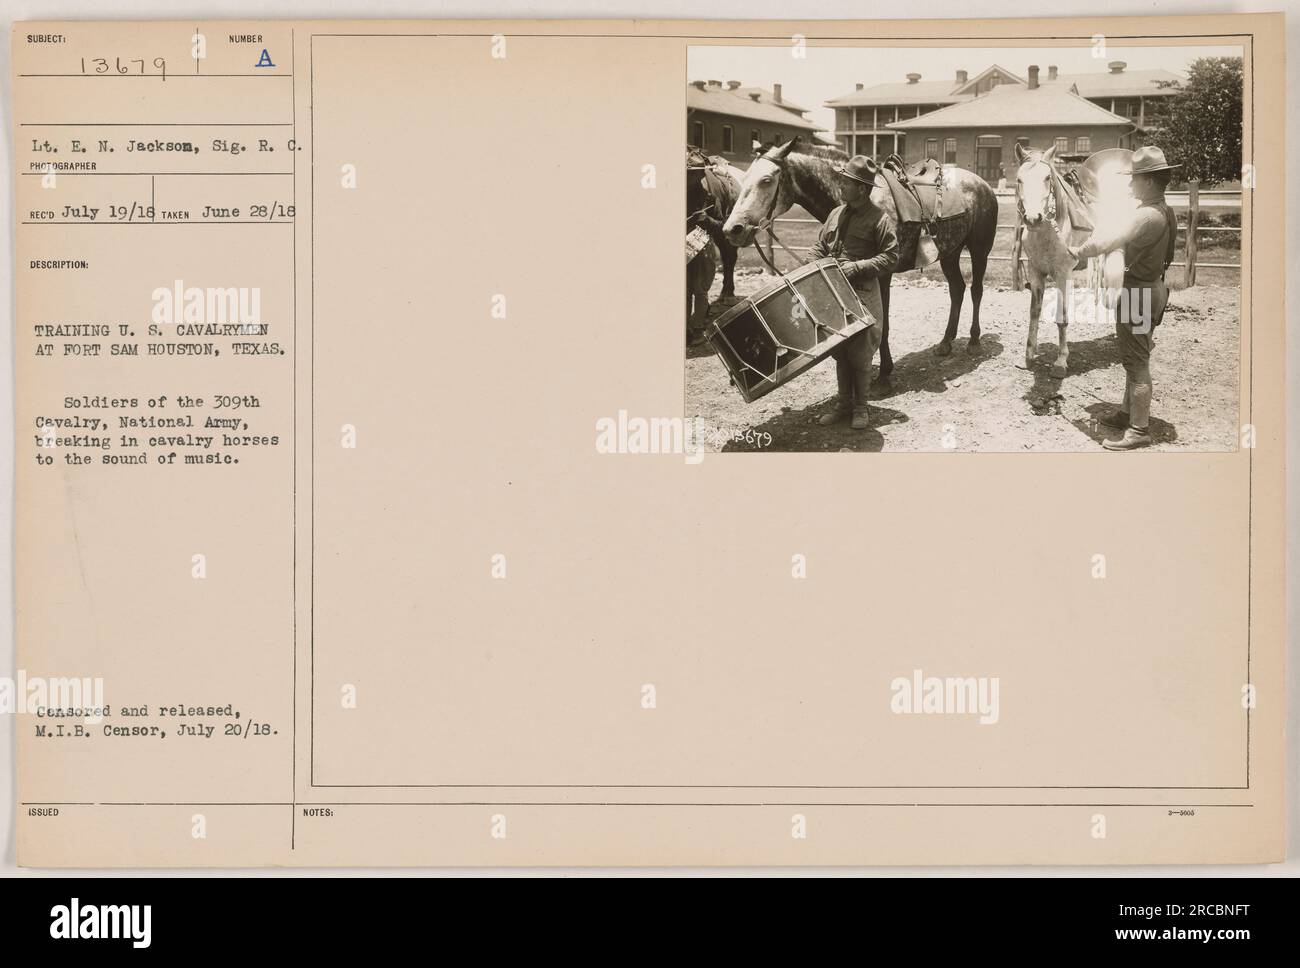 Soldaten der 309. Kavallerie, National Army, brechen beim Training in Fort Sam Houston, Texas, Kavalleriepferde zum Klang der Musik ein. Das Foto ging am 19. Juli 1918 ein und wurde am 28. Juni 1918 aufgenommen. Es wurde zensiert und am 20. Juli 1918 vom M.I.B.-Zensor veröffentlicht." Stockfoto